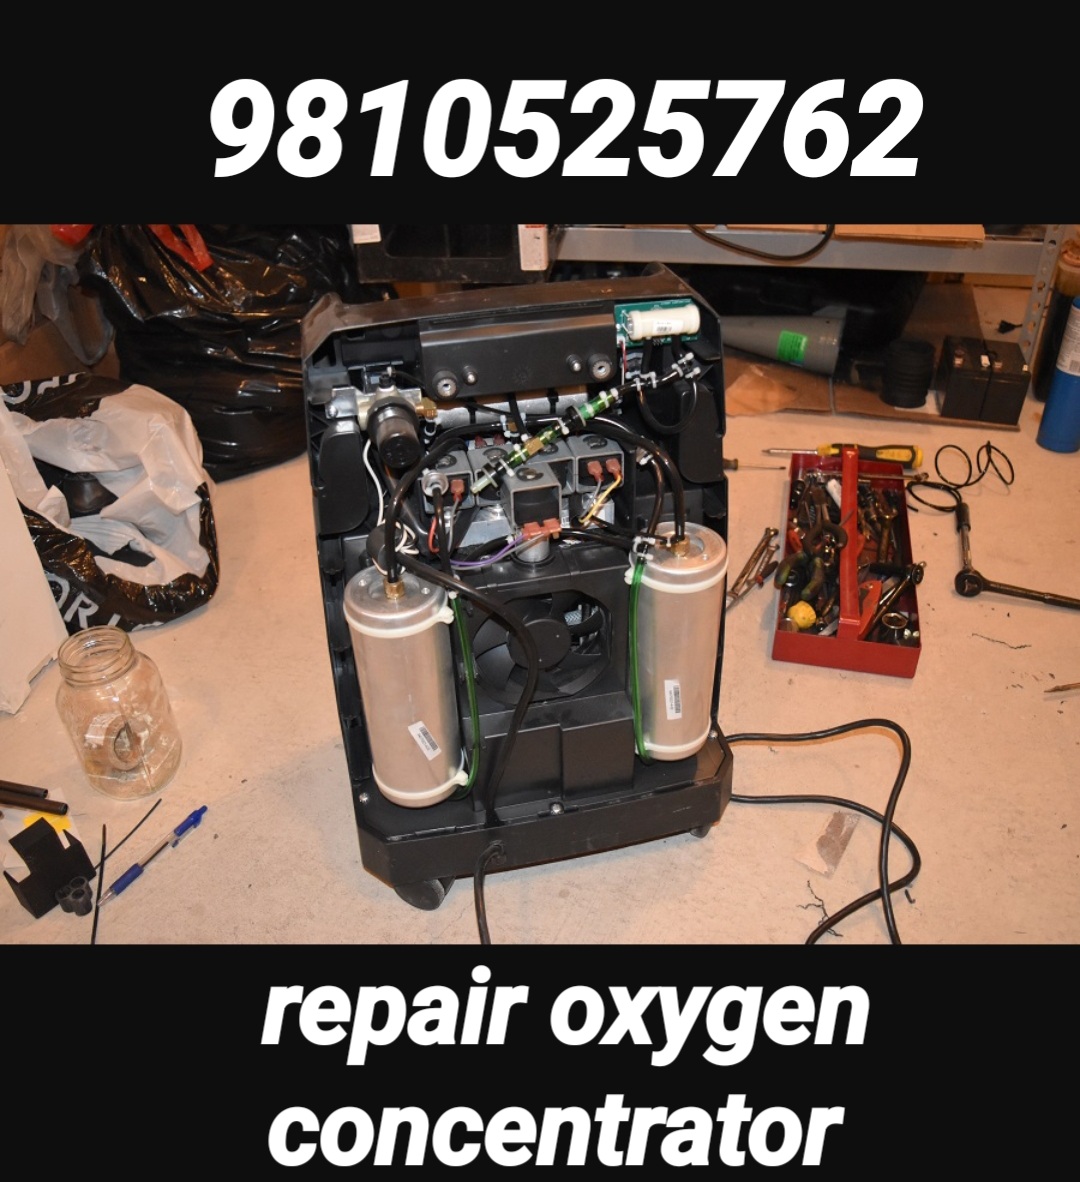 oxygen concentrator repair in noida 9810525762